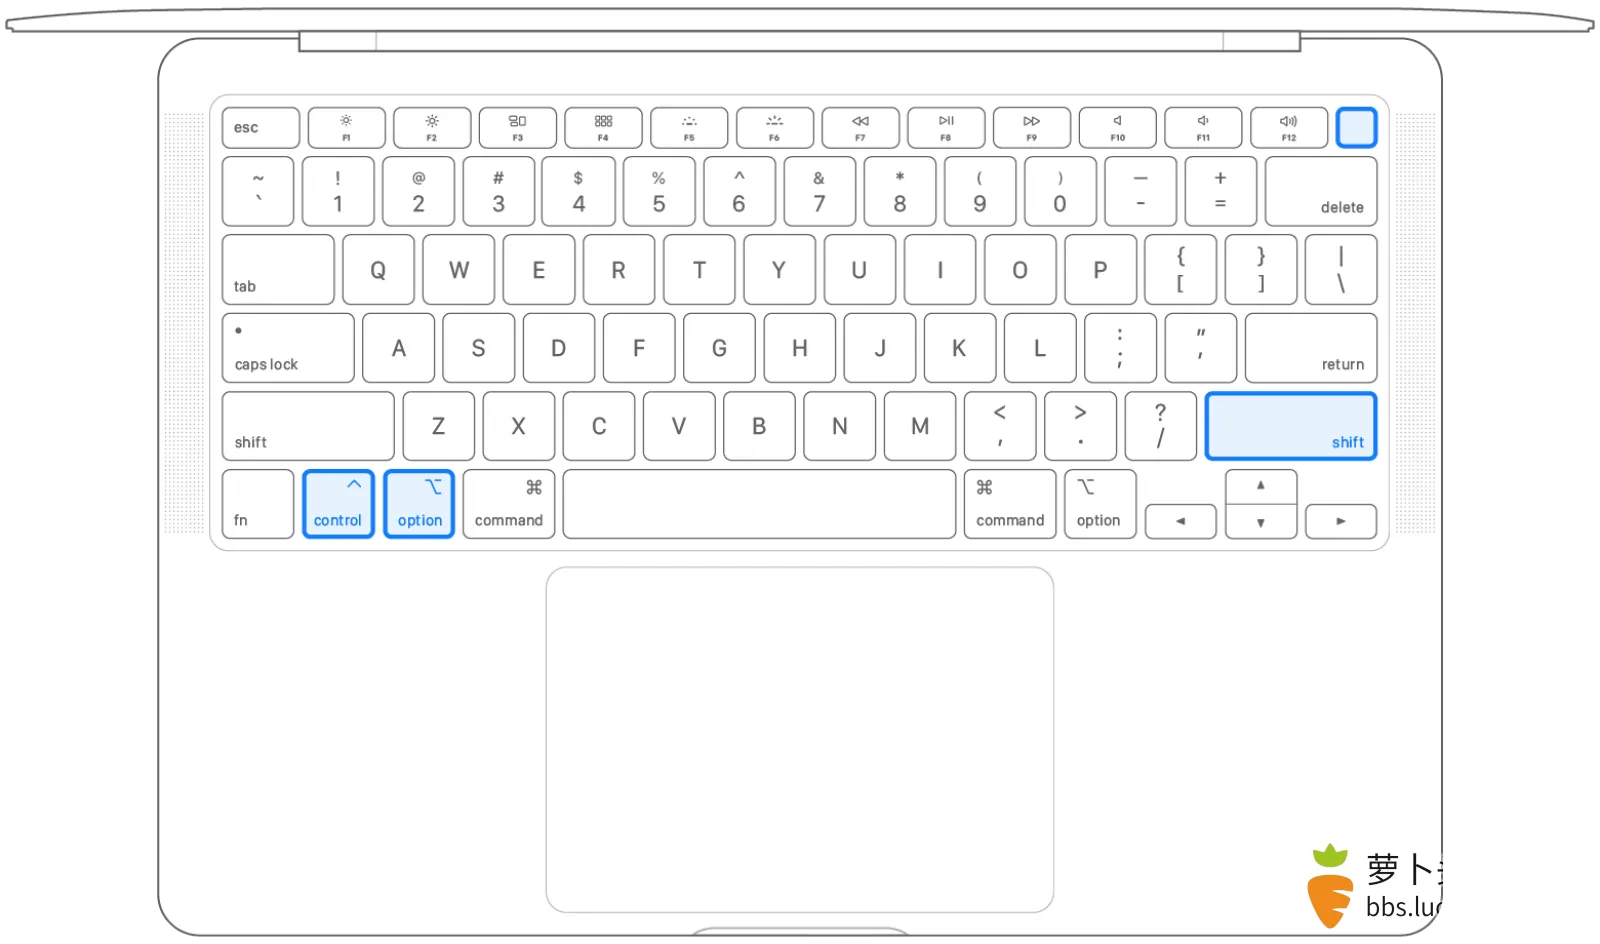 2020-macbook-air-keyboard-diagram-smc.png